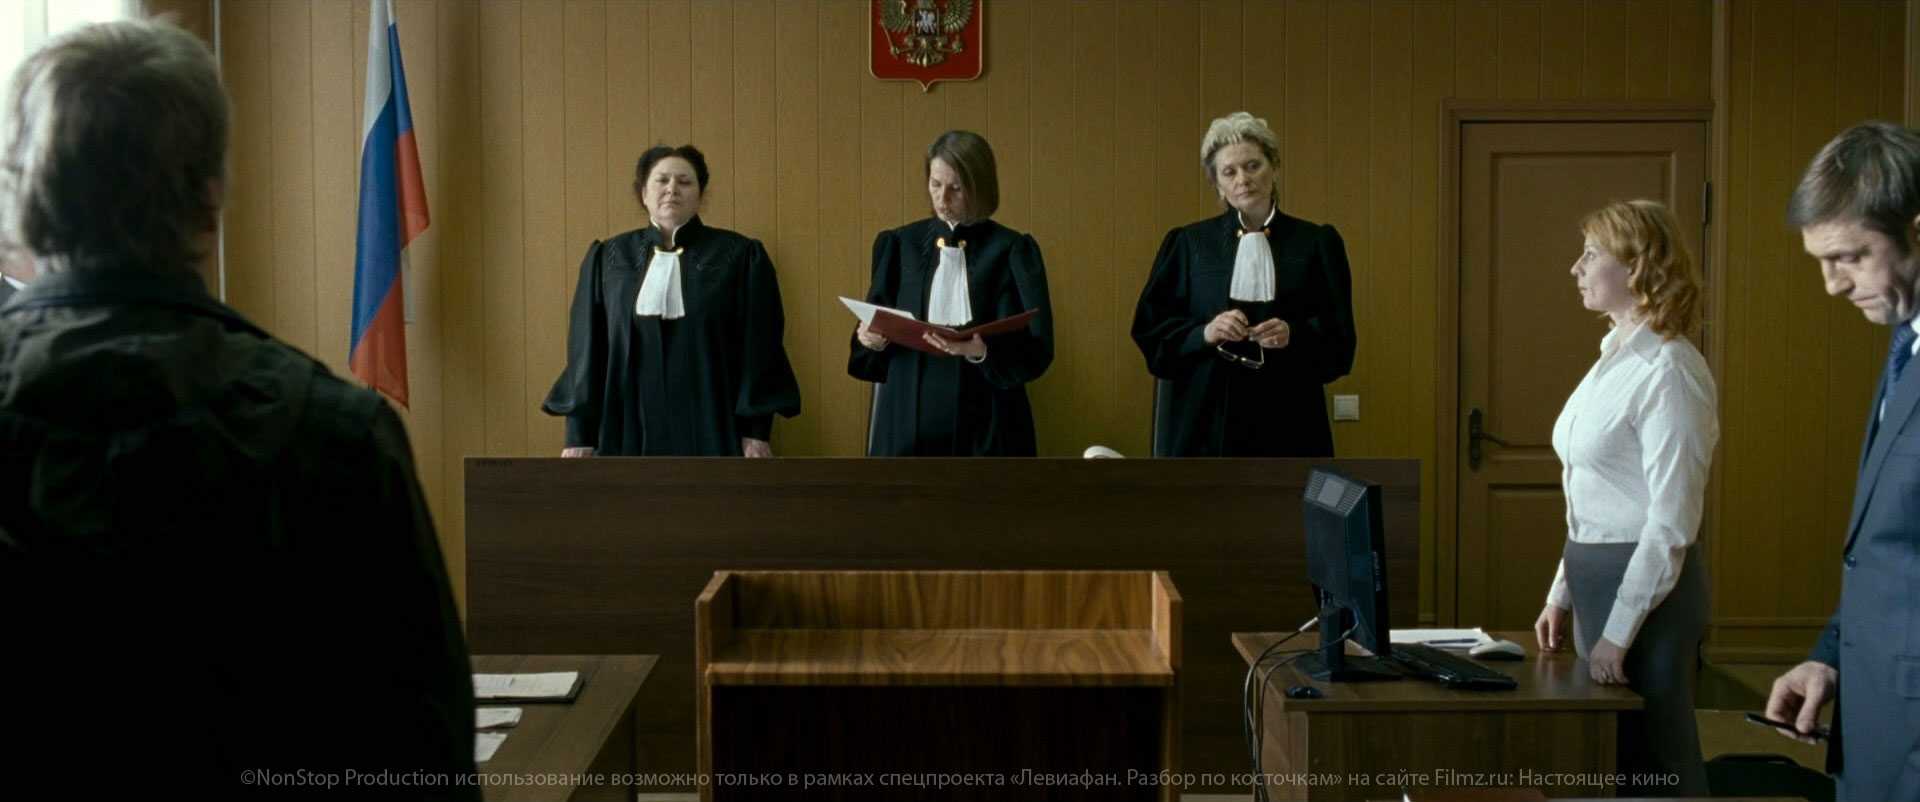 Фильмы про адвокатов и судебные процессы - 25 зарубежных новинок